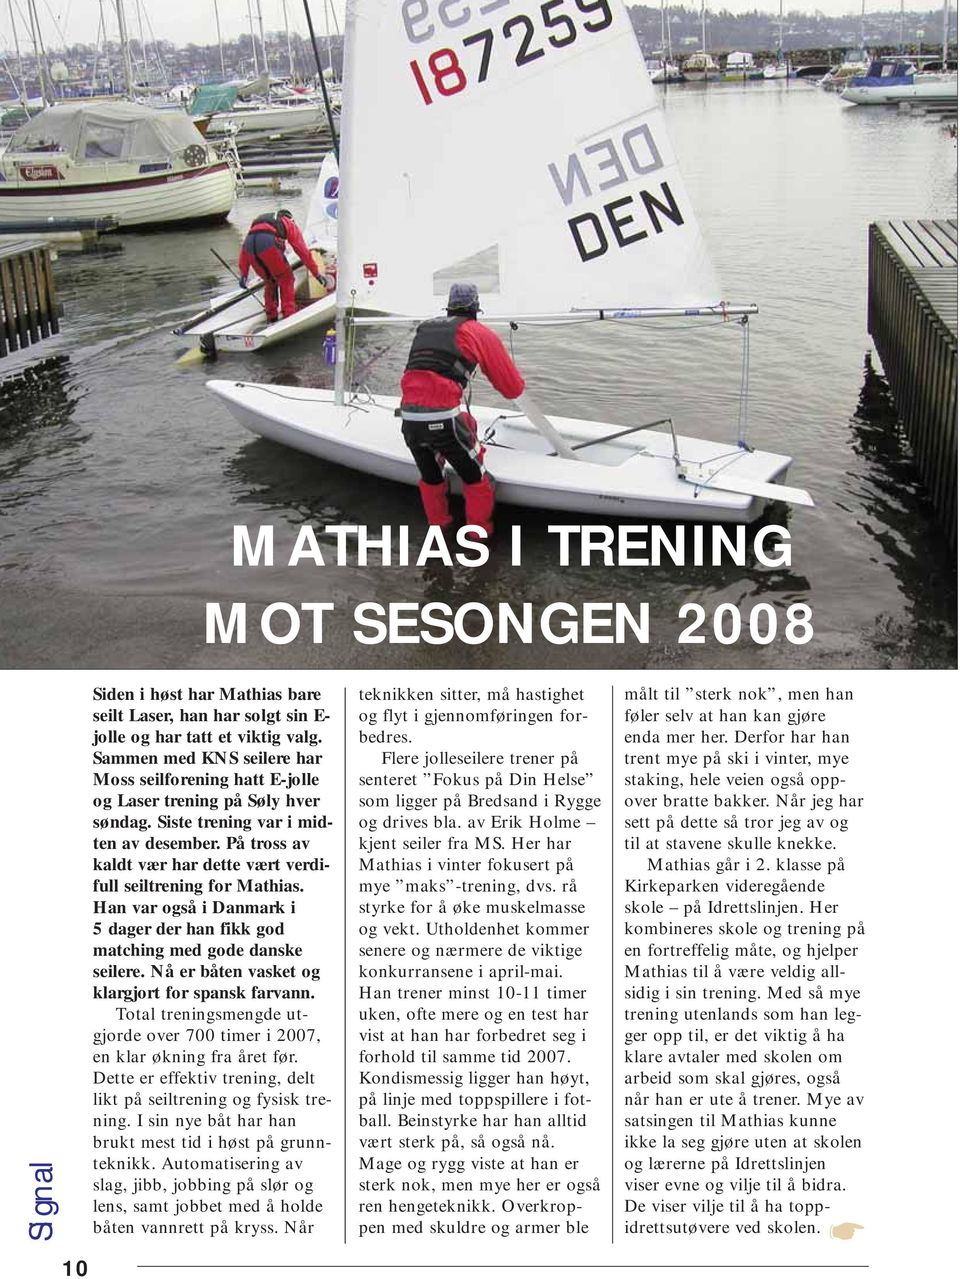 På tross av kaldt vær har dette vært verdifull seiltrening for Mathias. Han var også i Danmark i 5 dager der han fikk god matching med gode danske seilere.